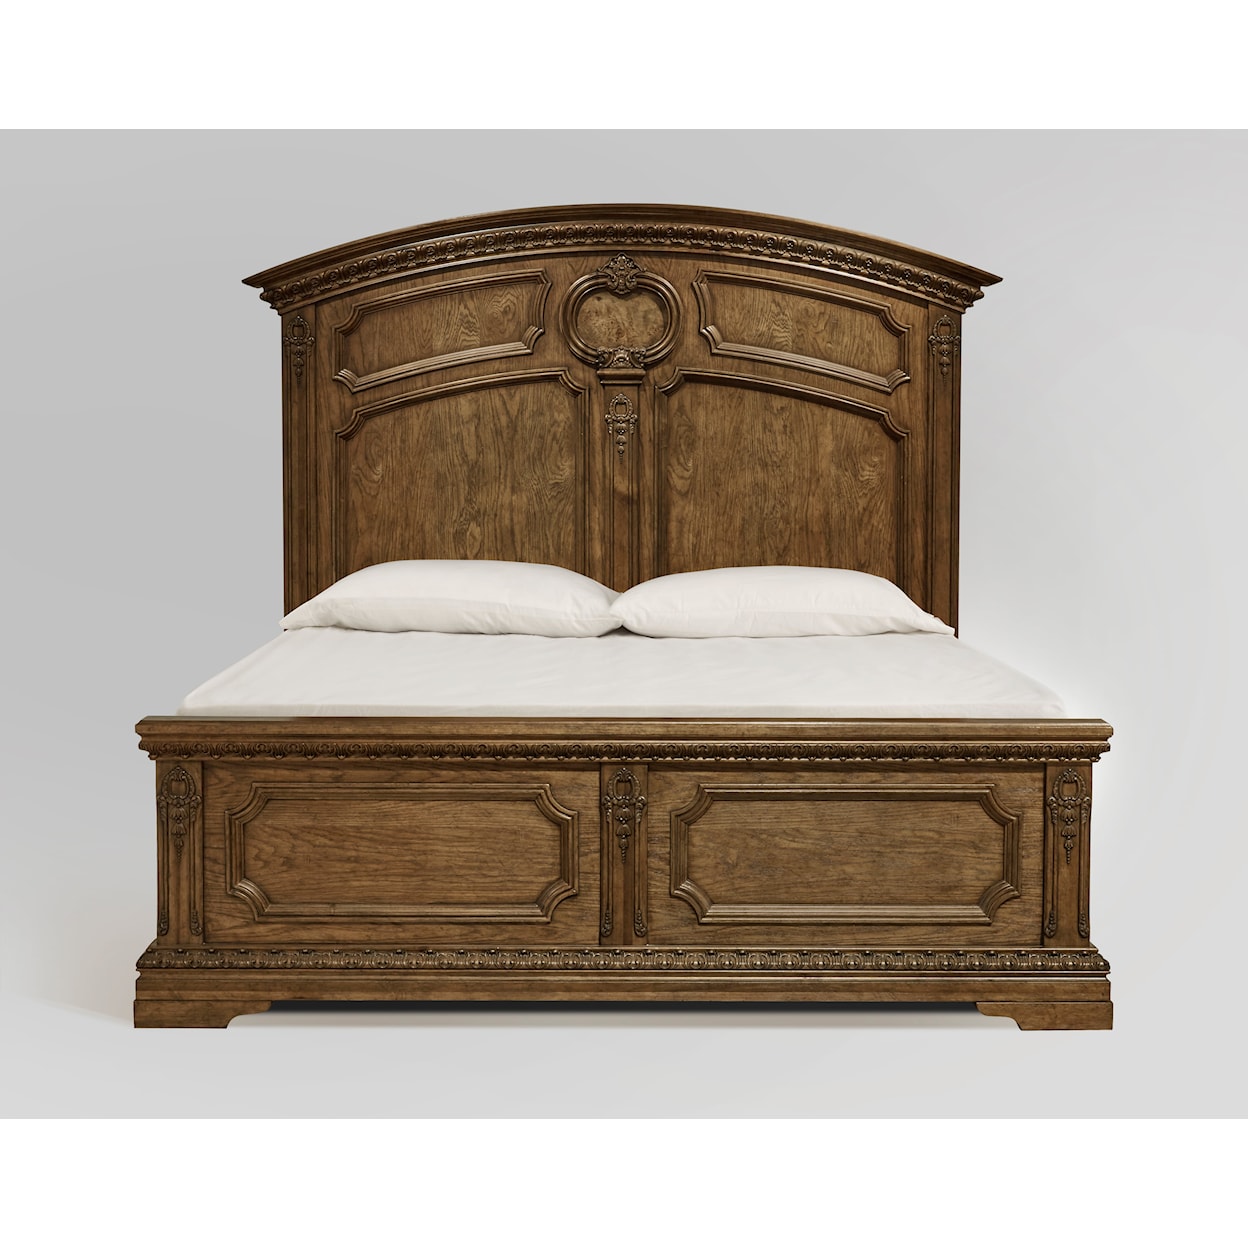 The Preserve Seneca King Mansion Bed